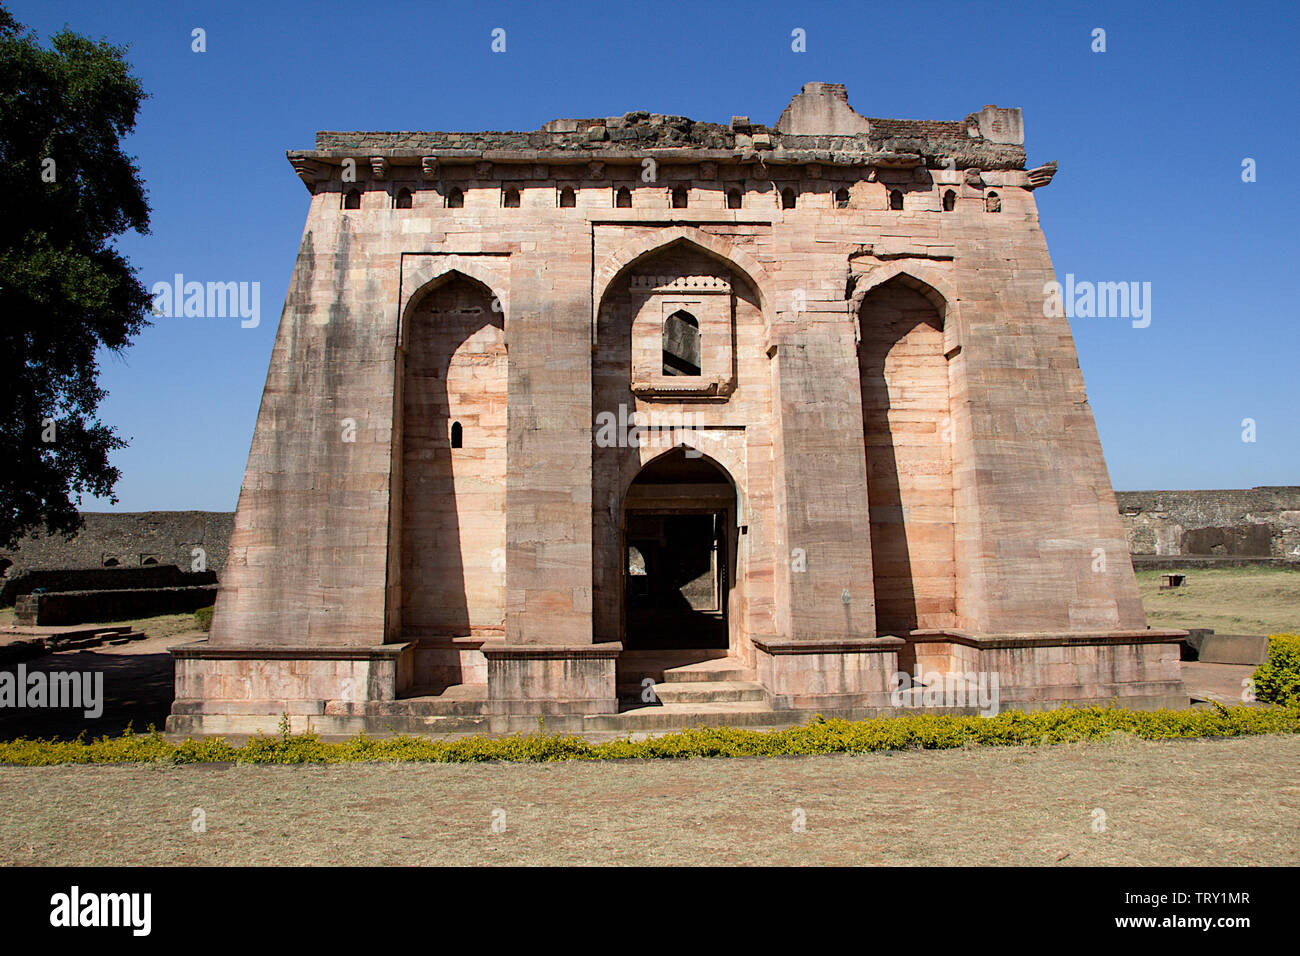 Frontal view of Hindola Mahal or Swinging Palace audience hall with sloping side walls at Mandu, Madhya Pradesh, India, Asia Stock Photo